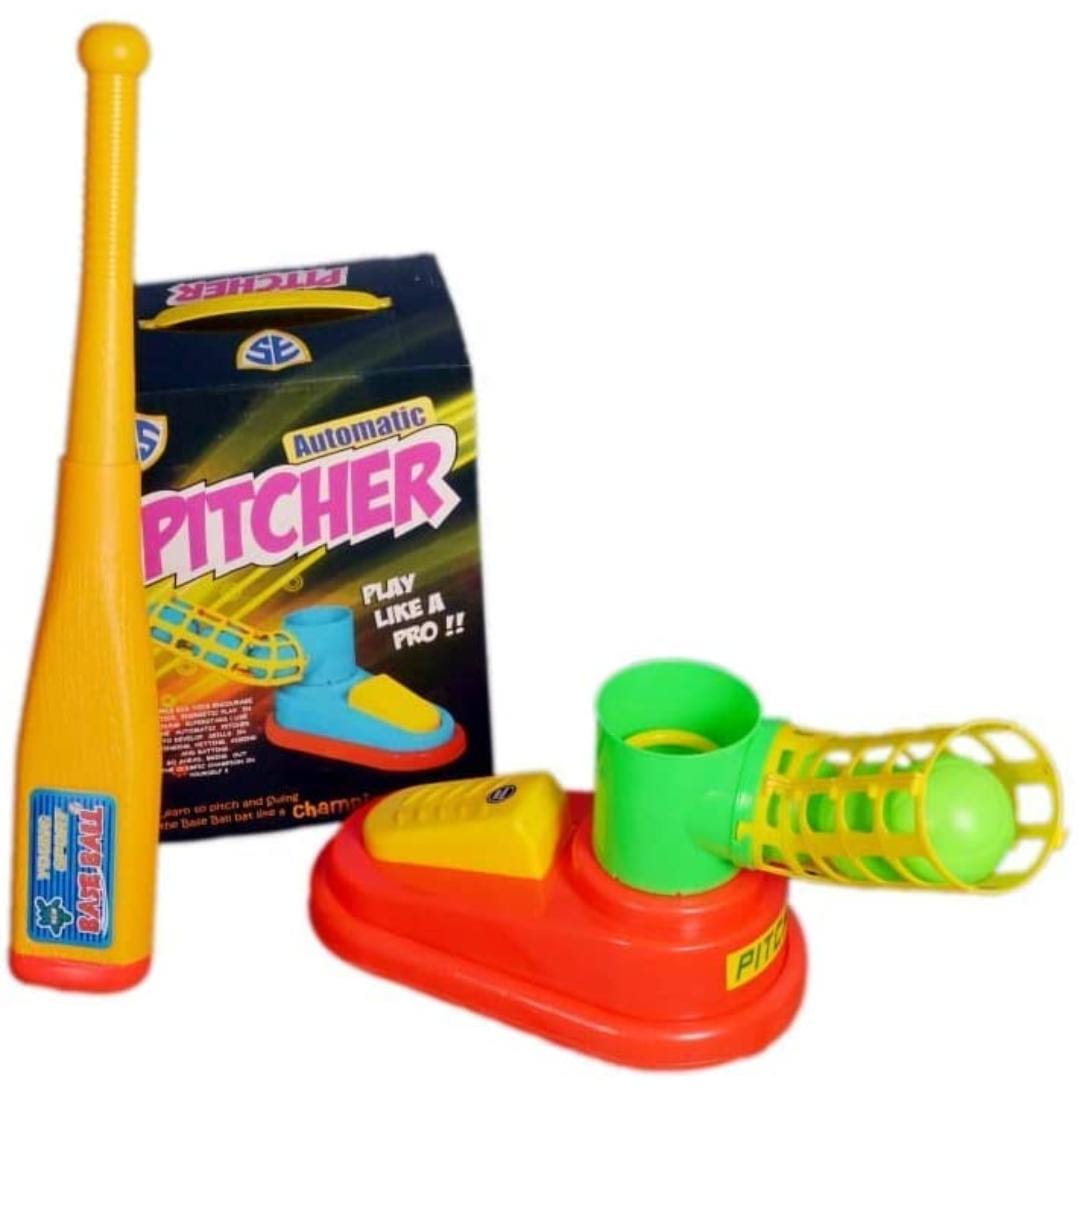 Pitcher Baseball set (5 year+ Kids Toy)